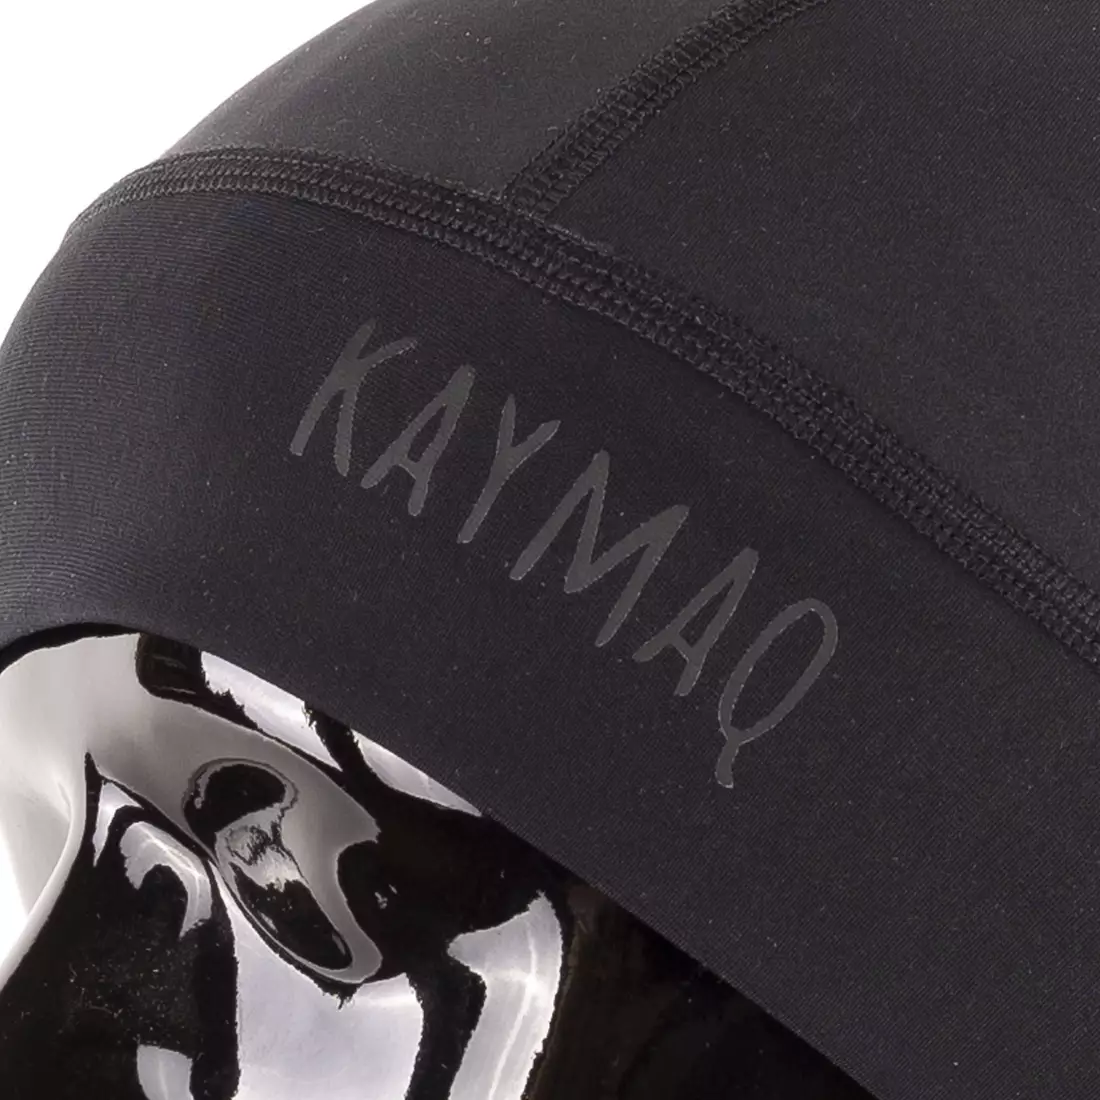 KAYMAQ univerzální sportovní čepice, čepice helmy, černá